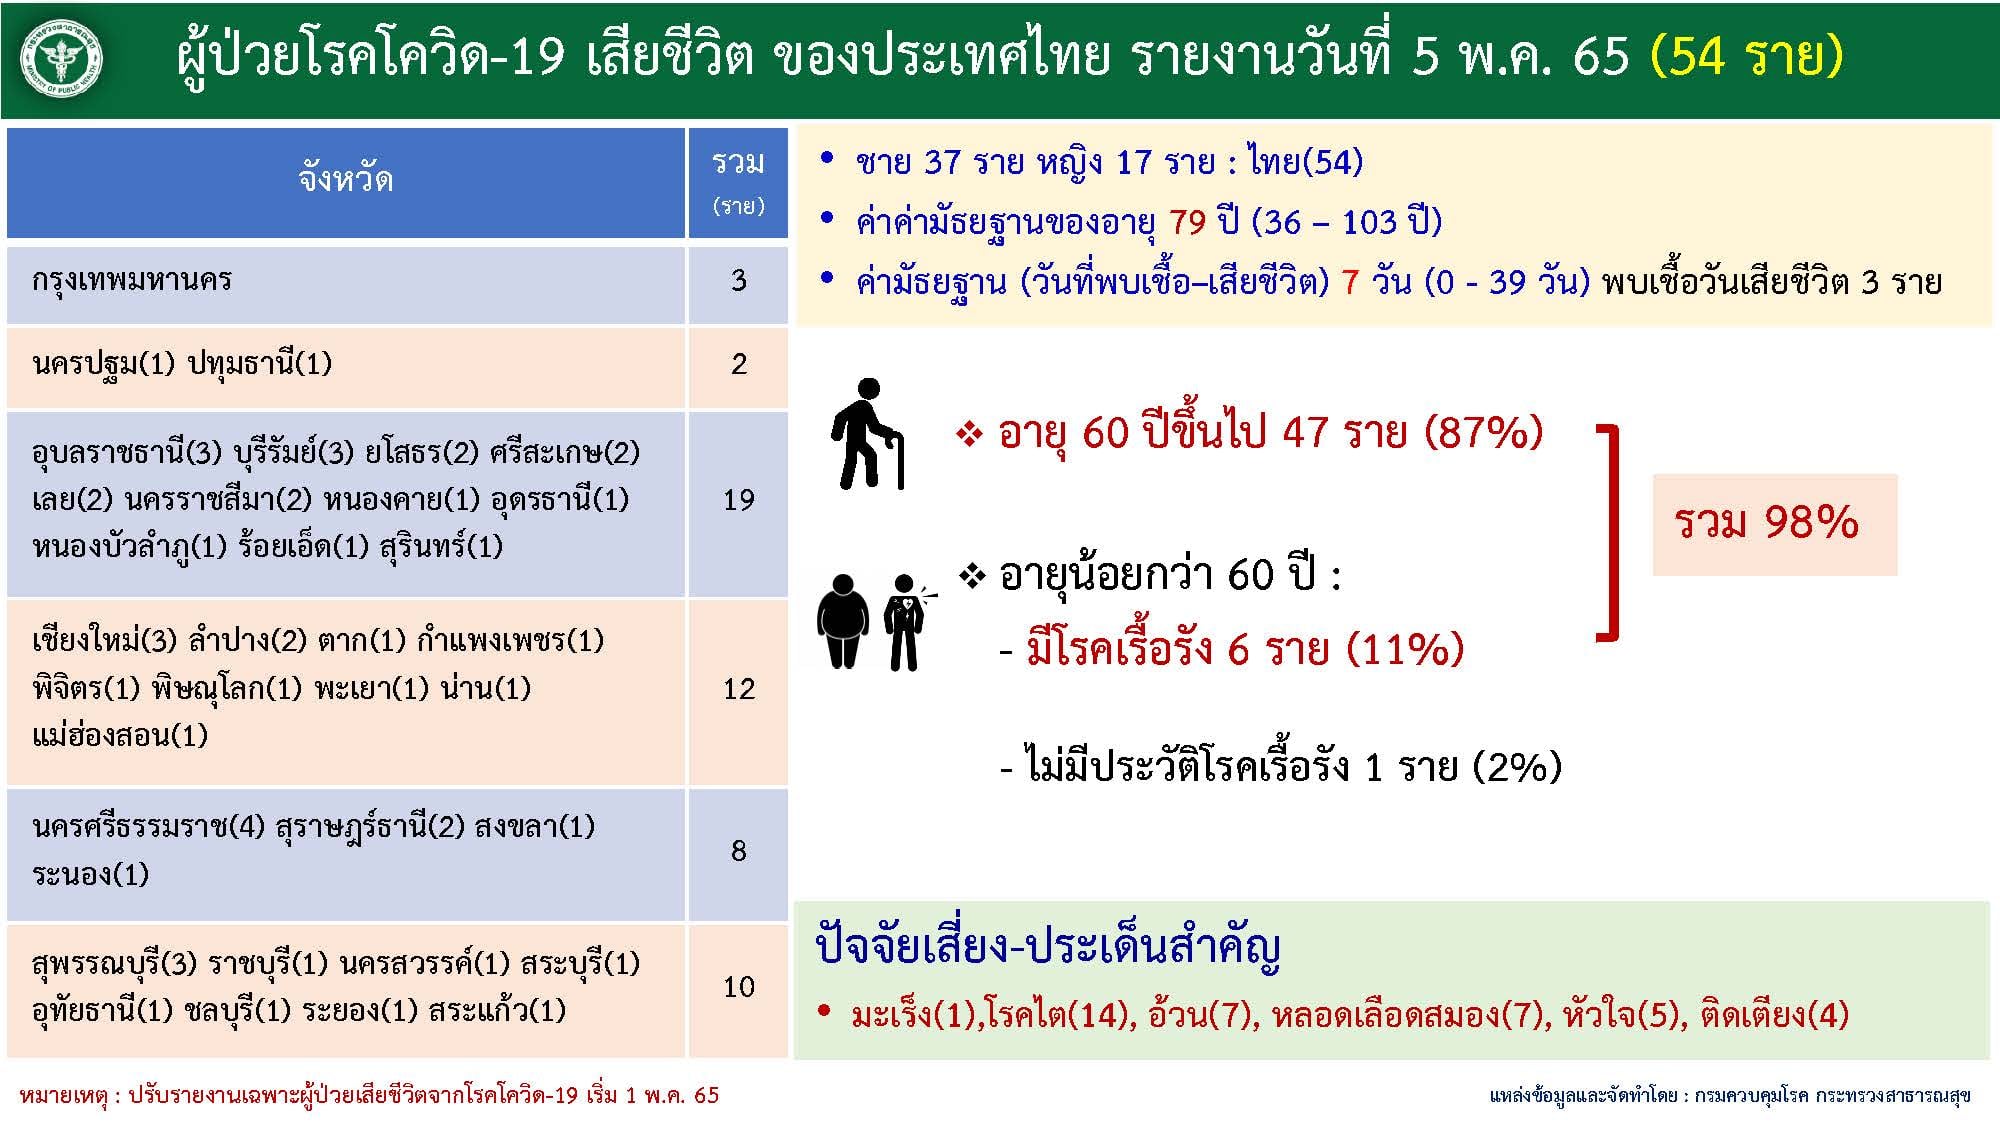 ผู้ป่วยโรคโควิด-19 เสียชีวิต ของประเทศไทย รายงานวันที่ 5 พ.ค..65 (54 ราย )